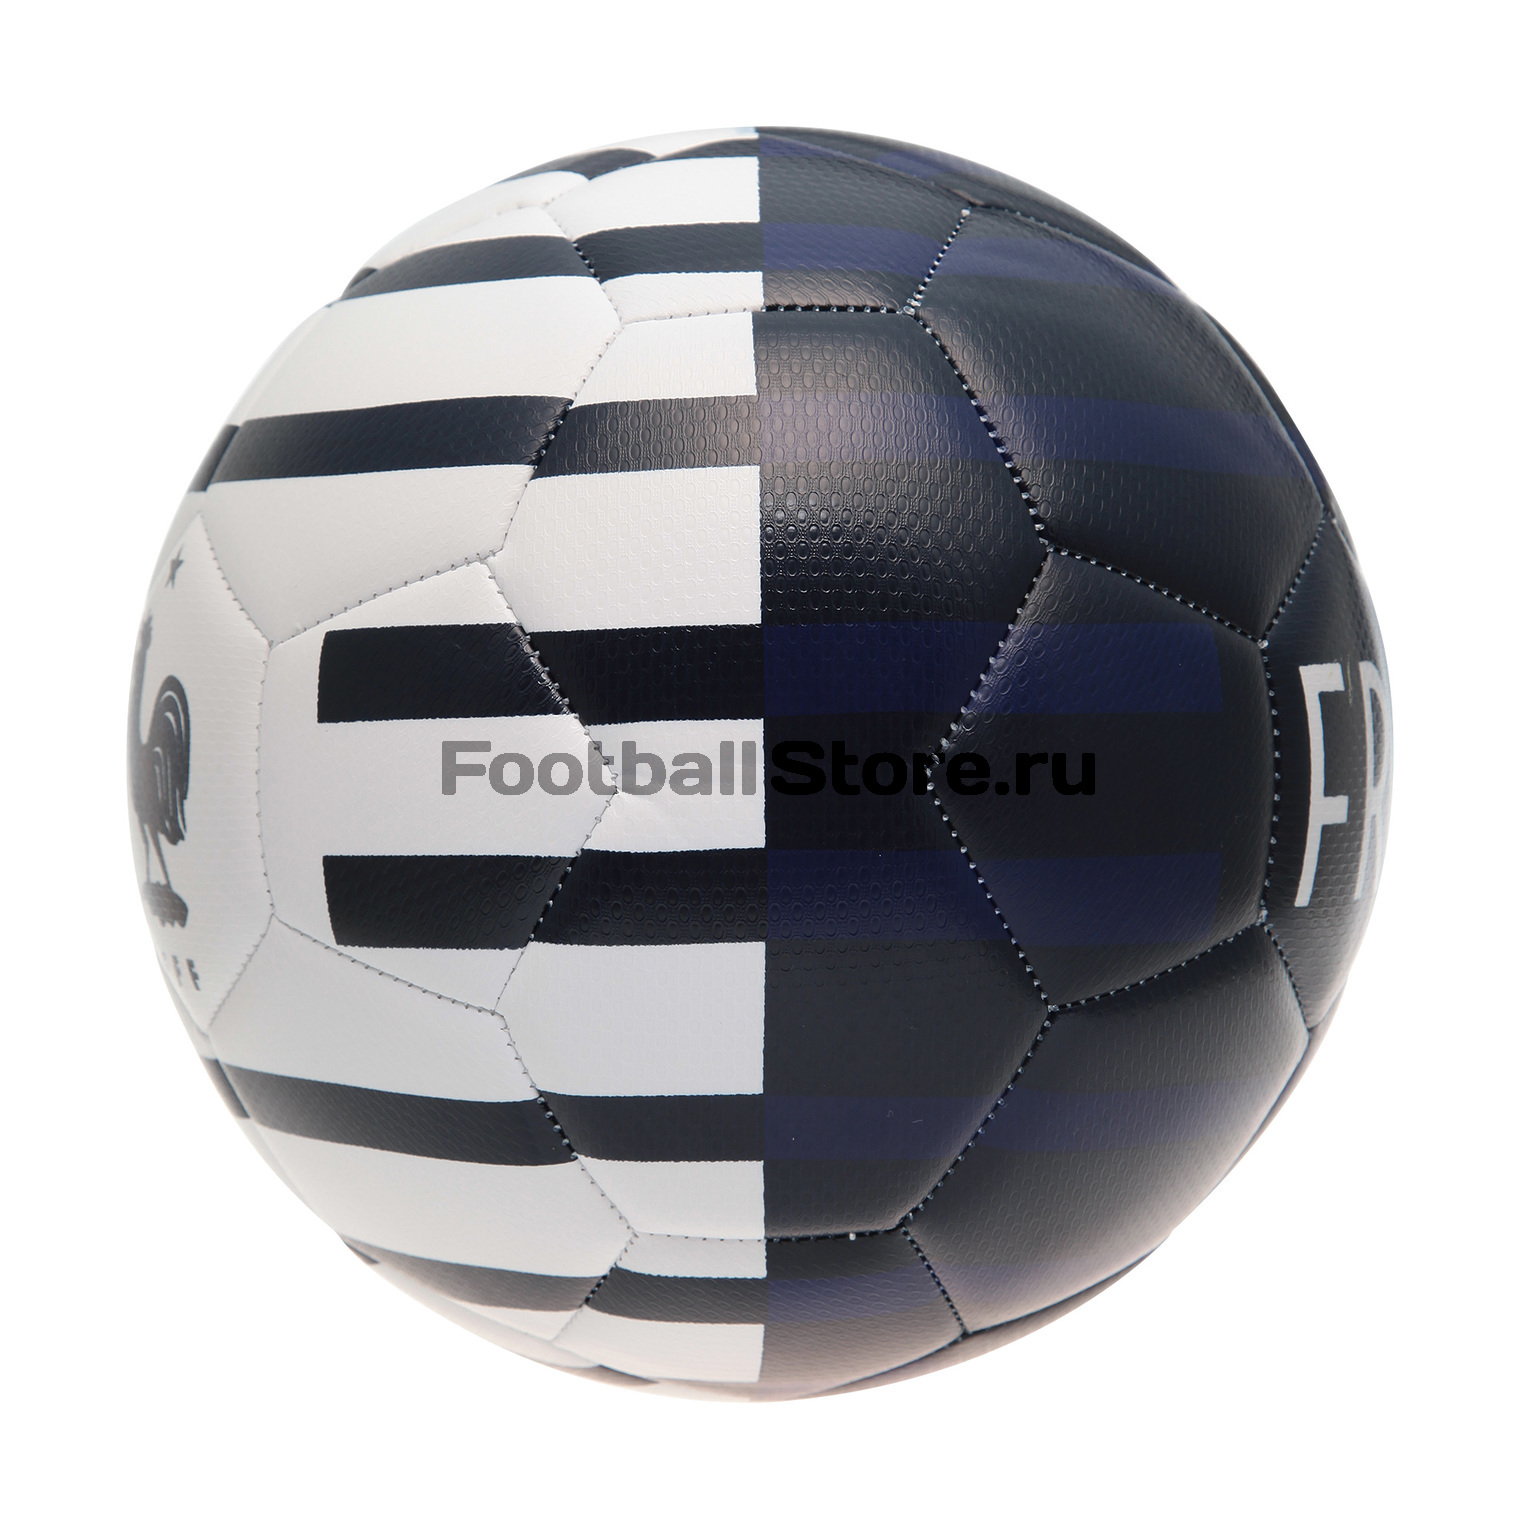 Футбольный мяч Nike сб. Франции (France) SC3233-451